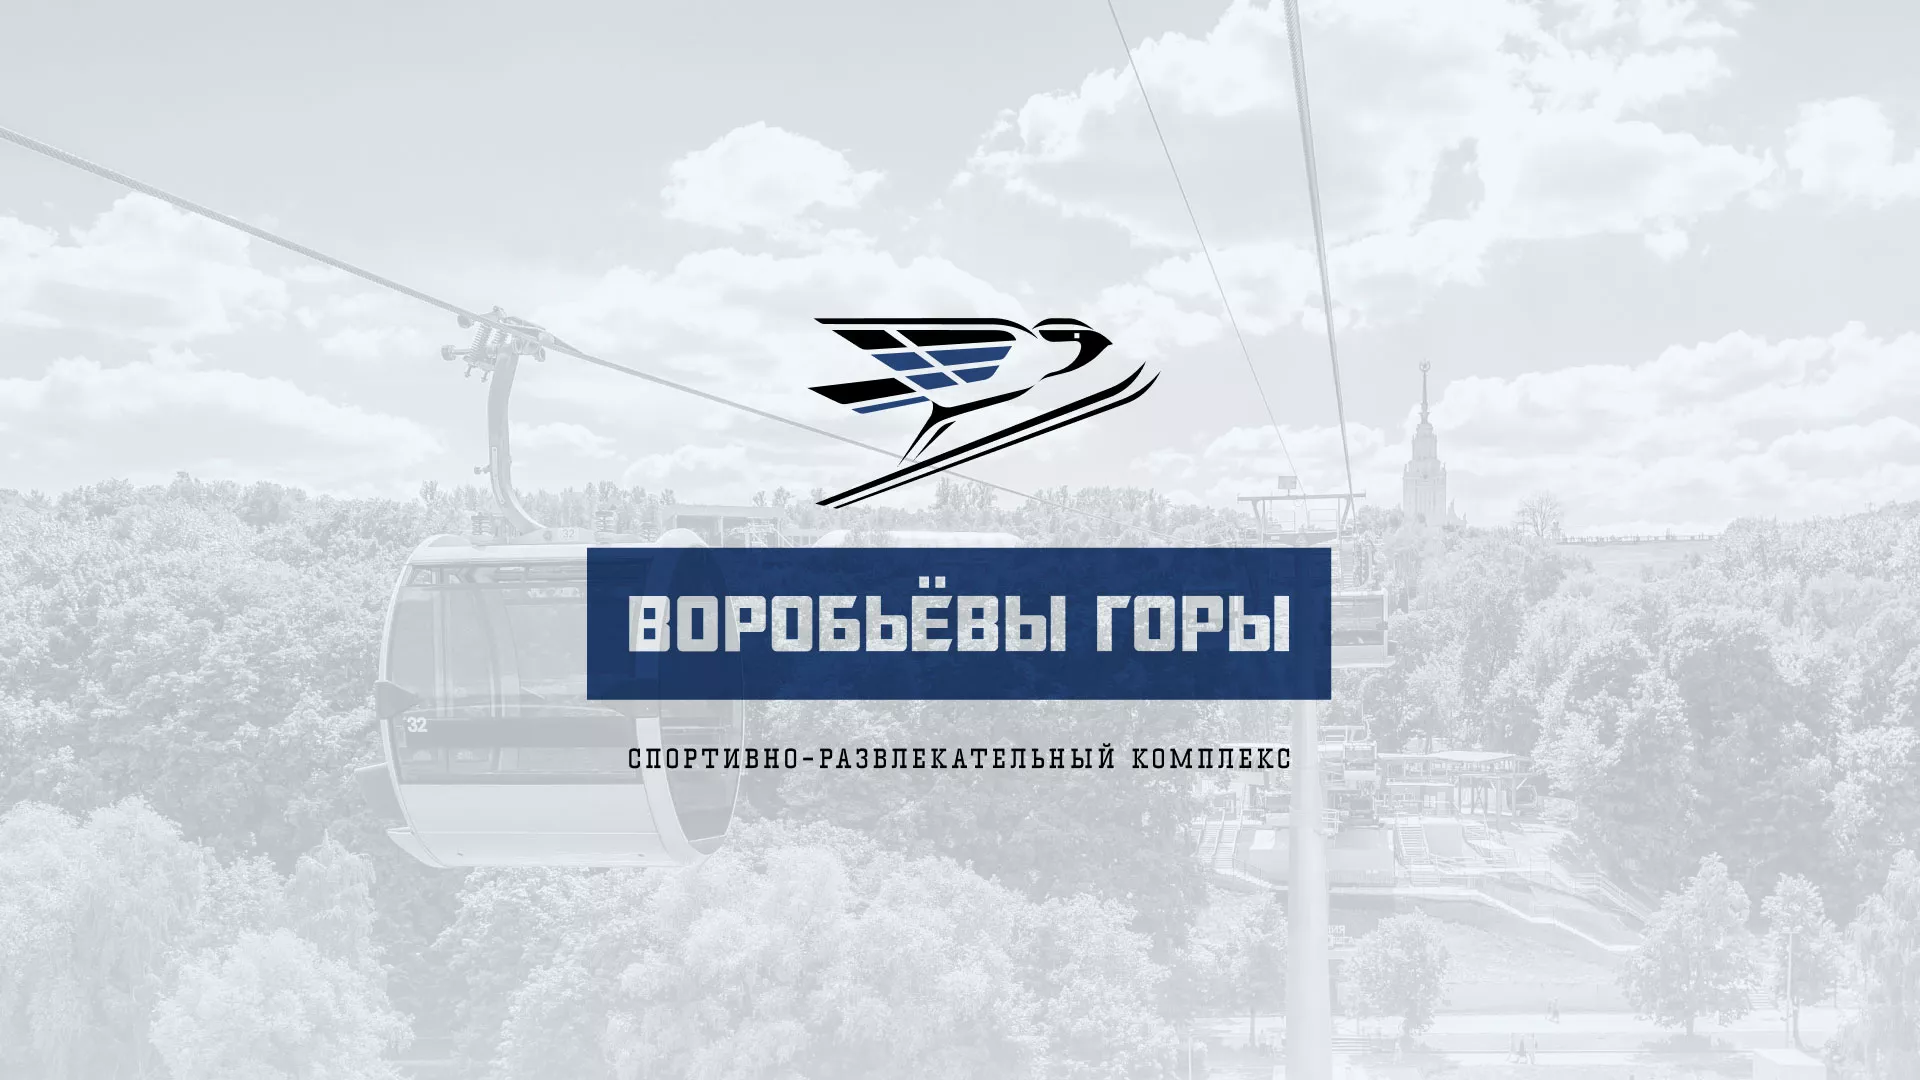 Разработка сайта в Куйбышеве для спортивно-развлекательного комплекса «Воробьёвы горы»